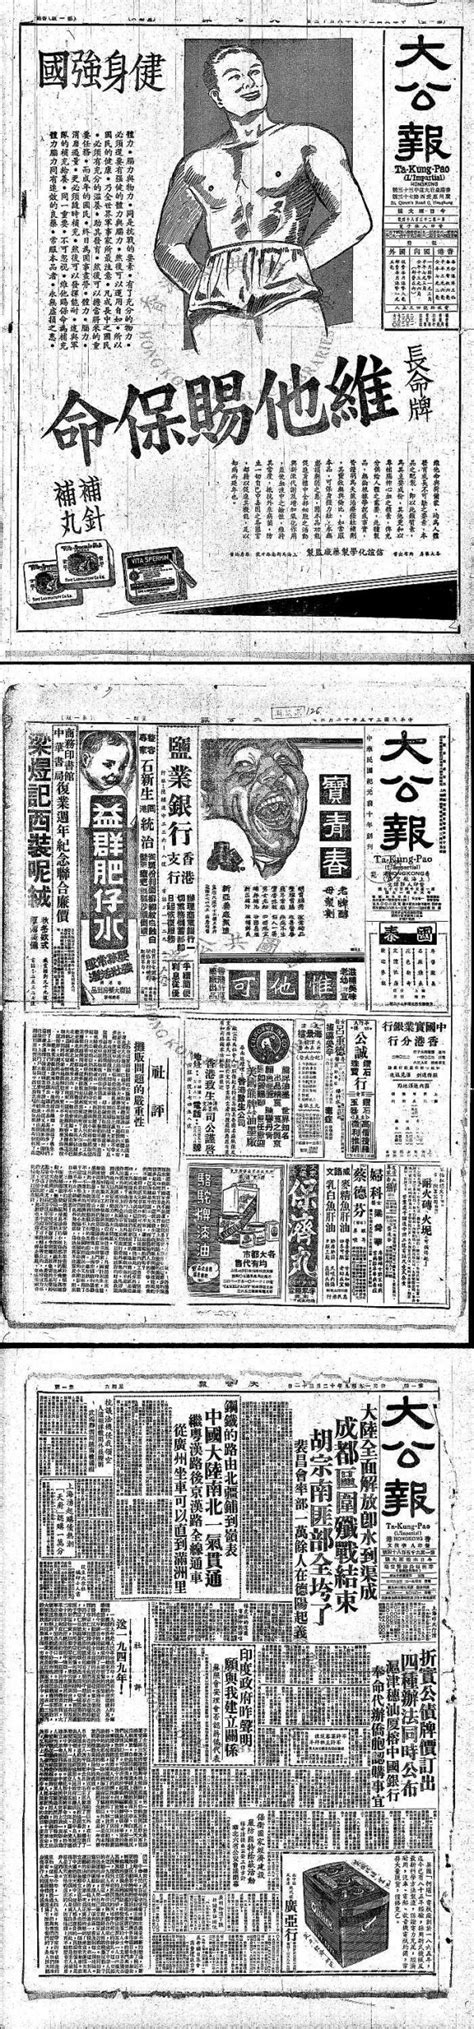 第 W3版:香港新聞 20230610期 国际日报